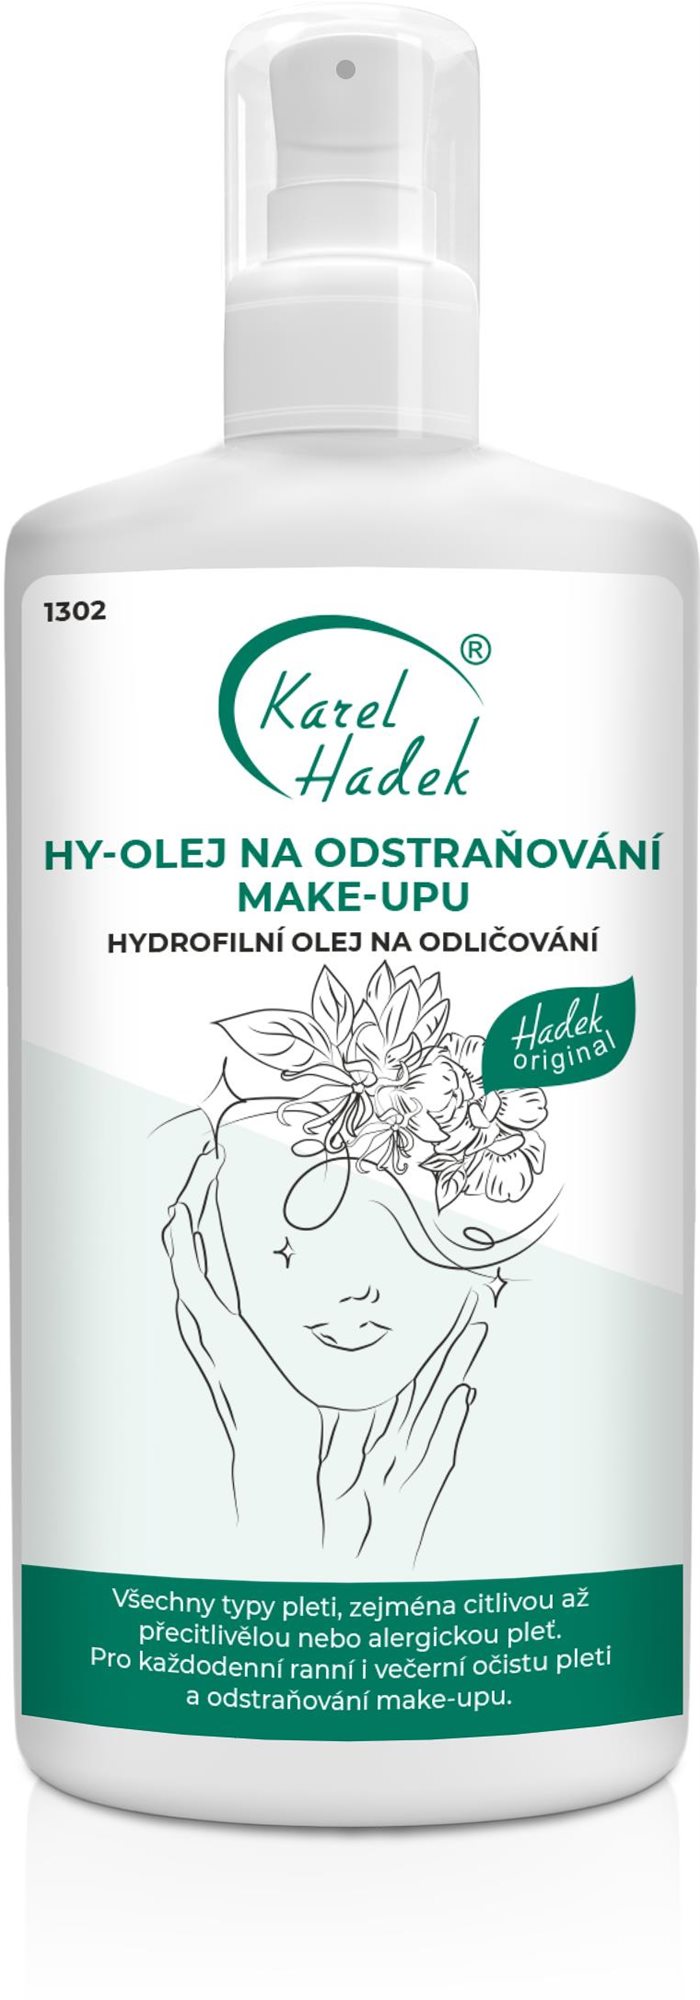 KAREL HADEK HY-olej na odstraňování make-upu 200 ml